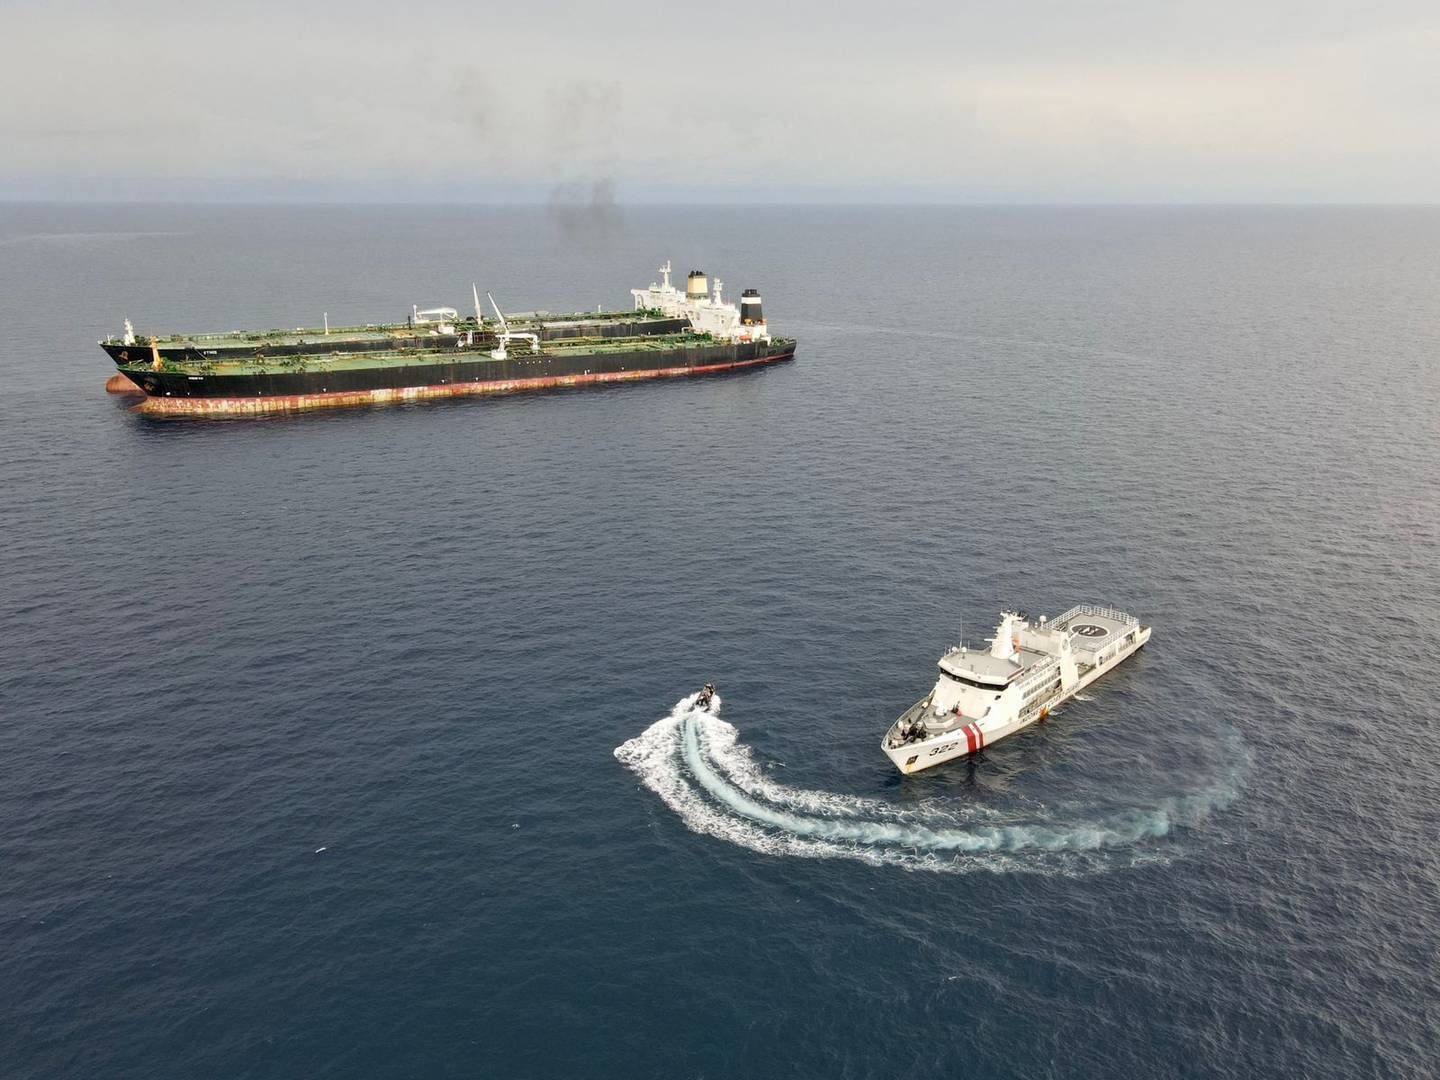 Rygterne går i øjeblikket på at prisen kan ligge over 300 mio. dollars, skriver den norske bank. | Foto: Indonesias Maritime Security Agency/Reuters/Ritzau Scanpix